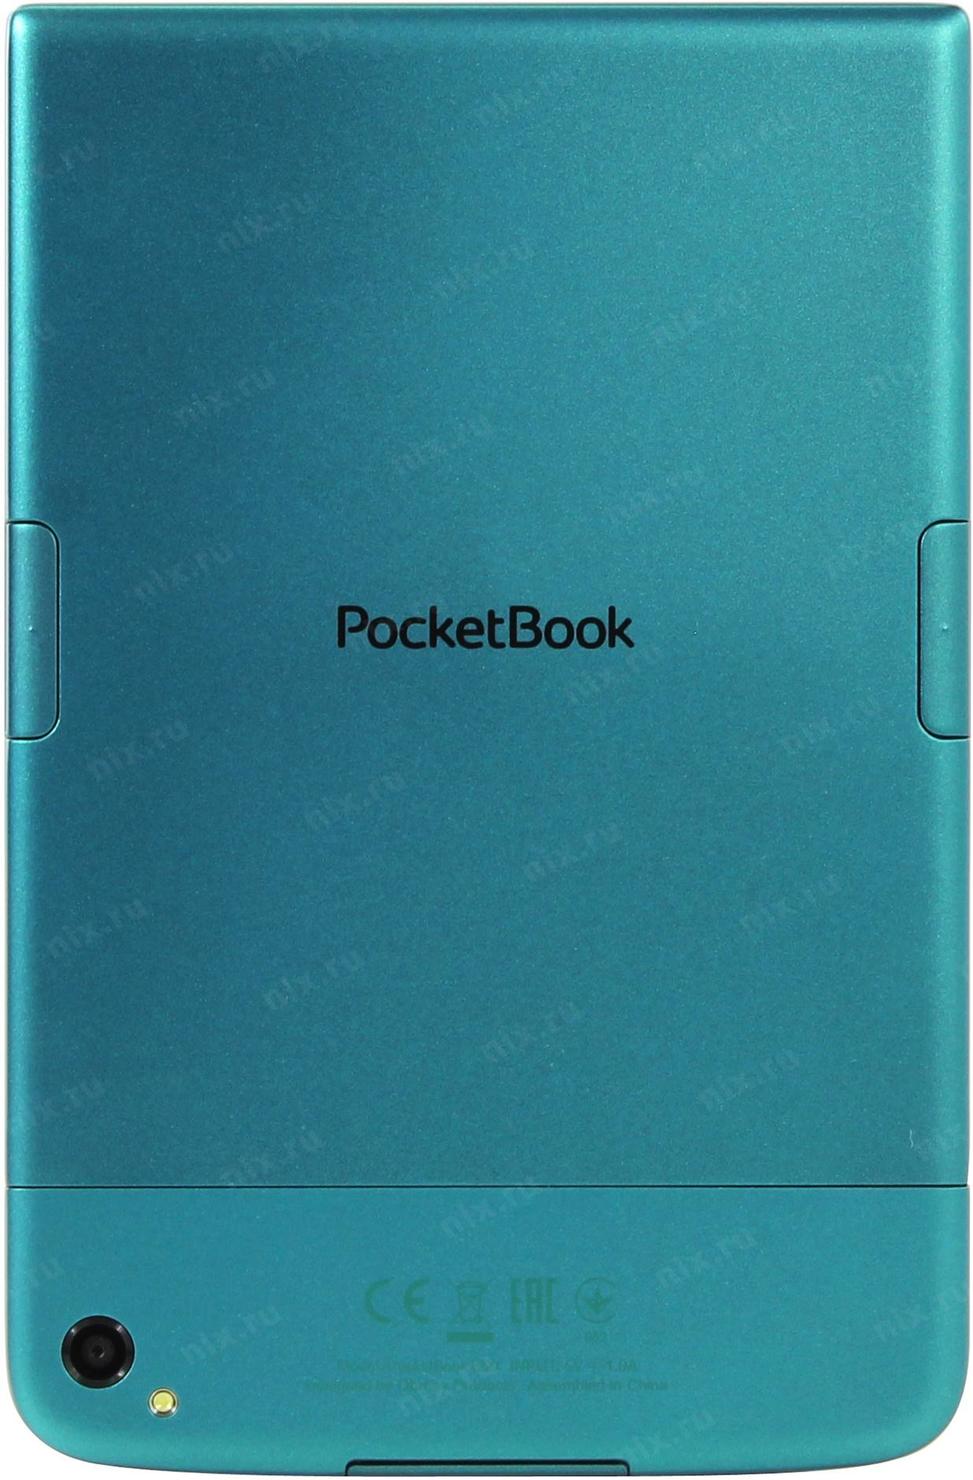 Pocketbook 650. Обложка для POCKETBOOK 650 оригинальная. Электронная книга POCKETBOOK 650 кнопка включения. Чехол для электронной книги POCKETBOOK 650.